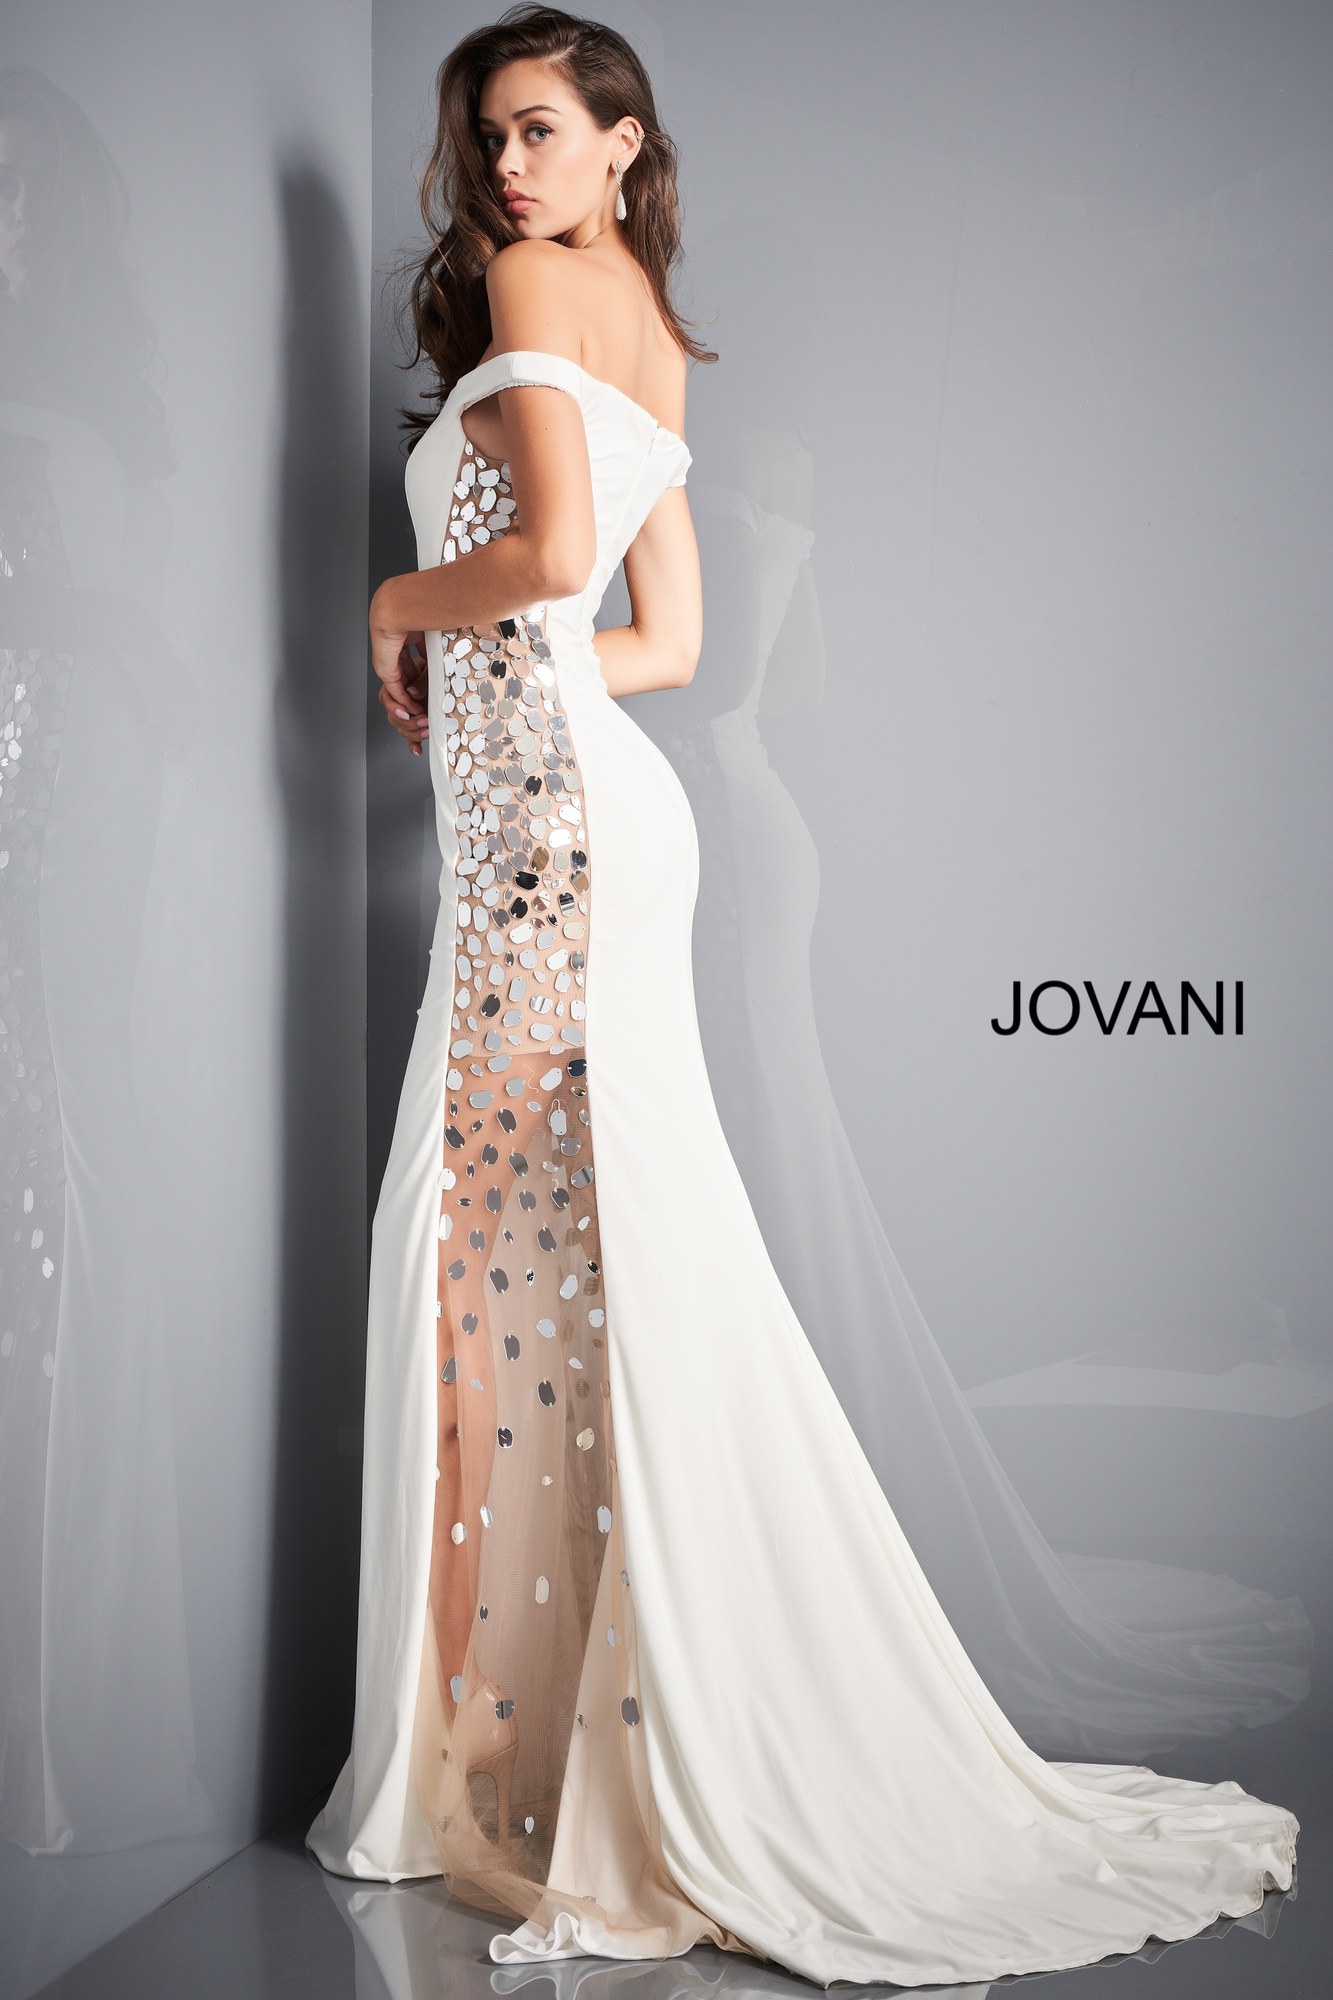 Jovani 03615 | Off White Off the Shoulder Embellished Prom Dress